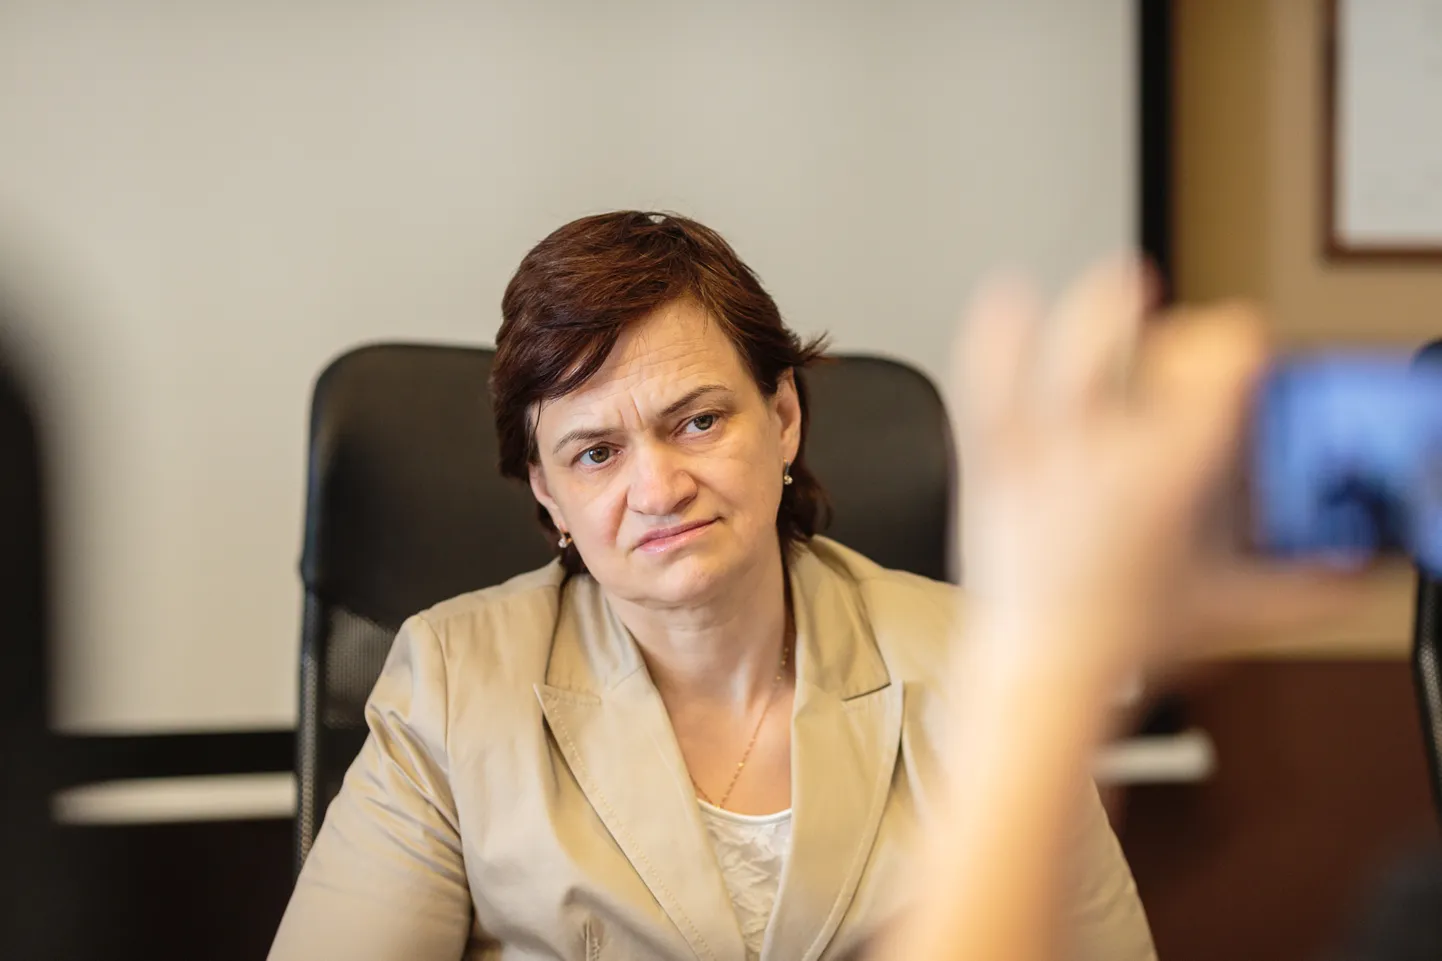 Narva sotsiaalabiameti direktor Jelena Vassiljeva sai töölt lahkudes kolme kuu palga suuruse preemia.